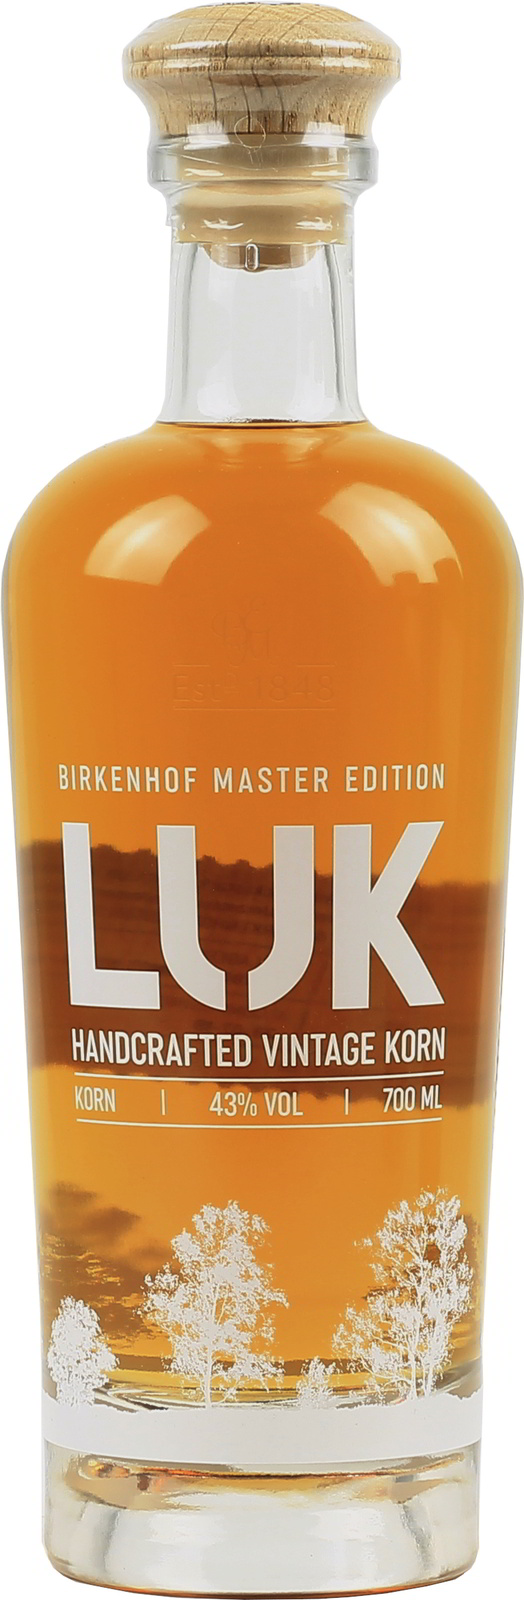 Handcrafted Korn, LUK exquisit Vintage Birkenhof